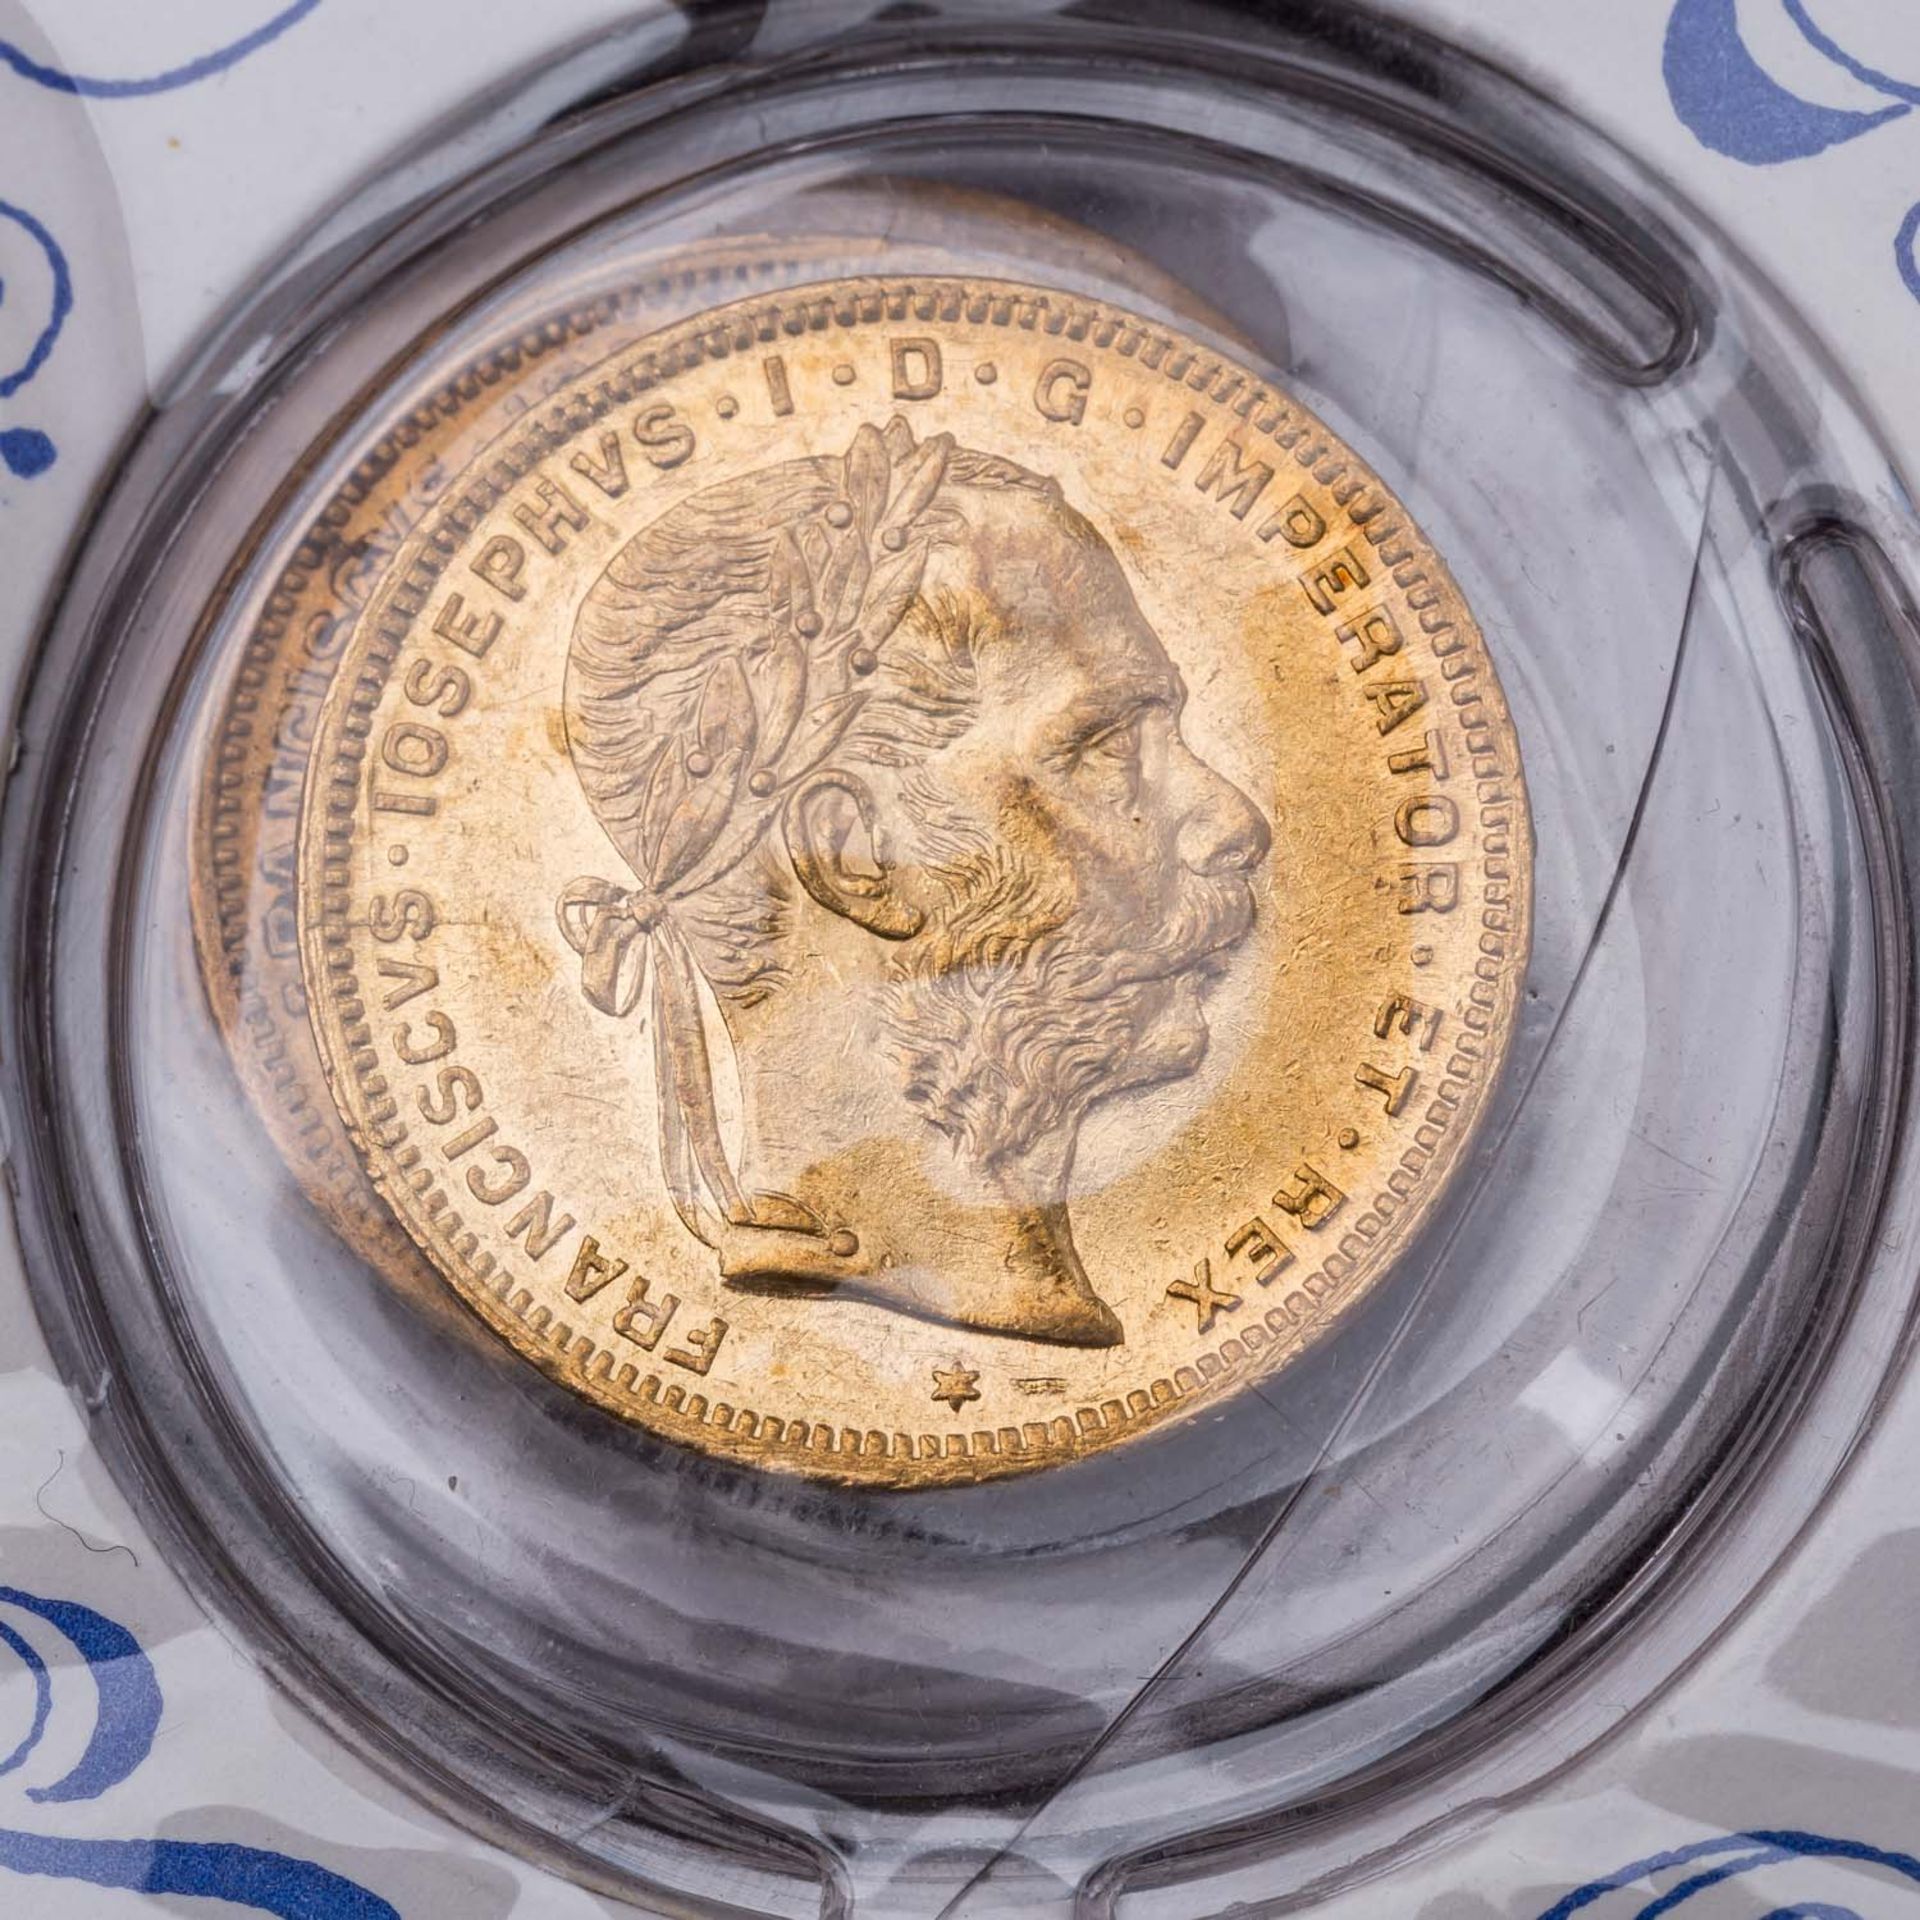 GOLD - Goldmünzen aus Europa und Nordamerika in 3 Alben. 49 Stück. - Image 3 of 9